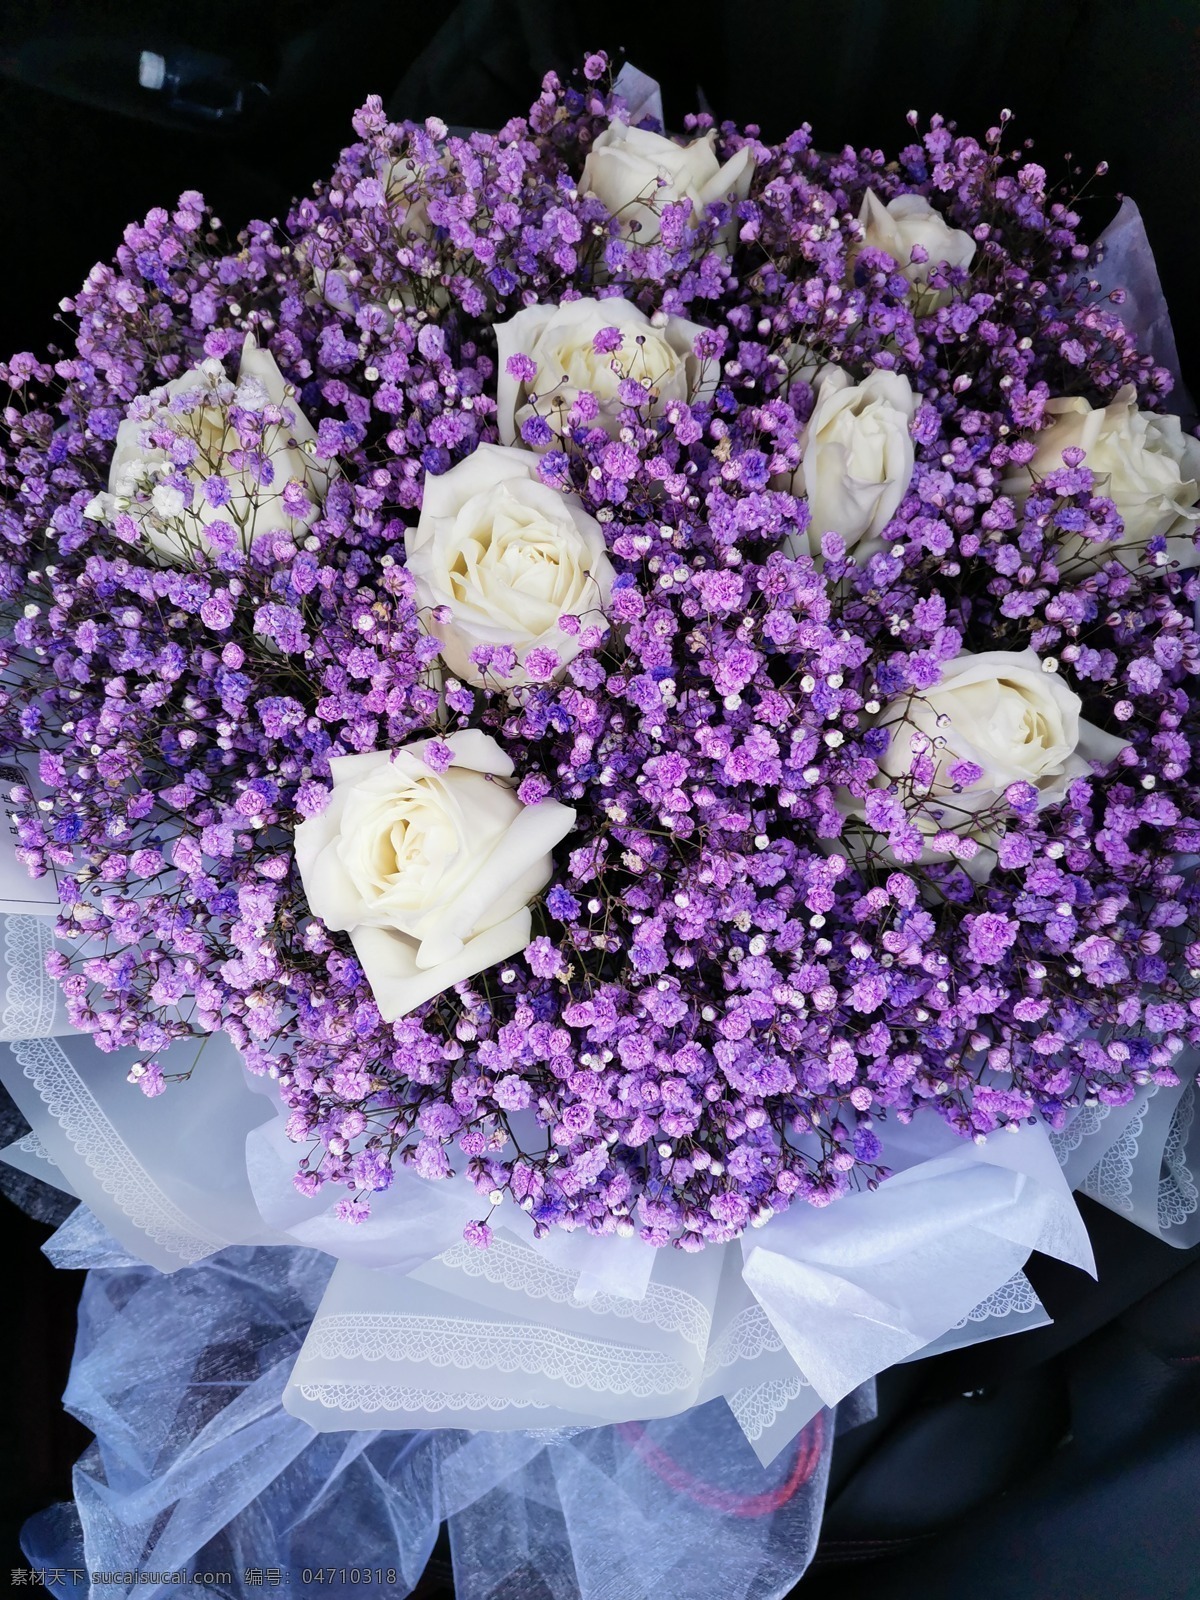 白玫瑰 花束 鲜花 满天星 白色 紫色 生物世界 花草